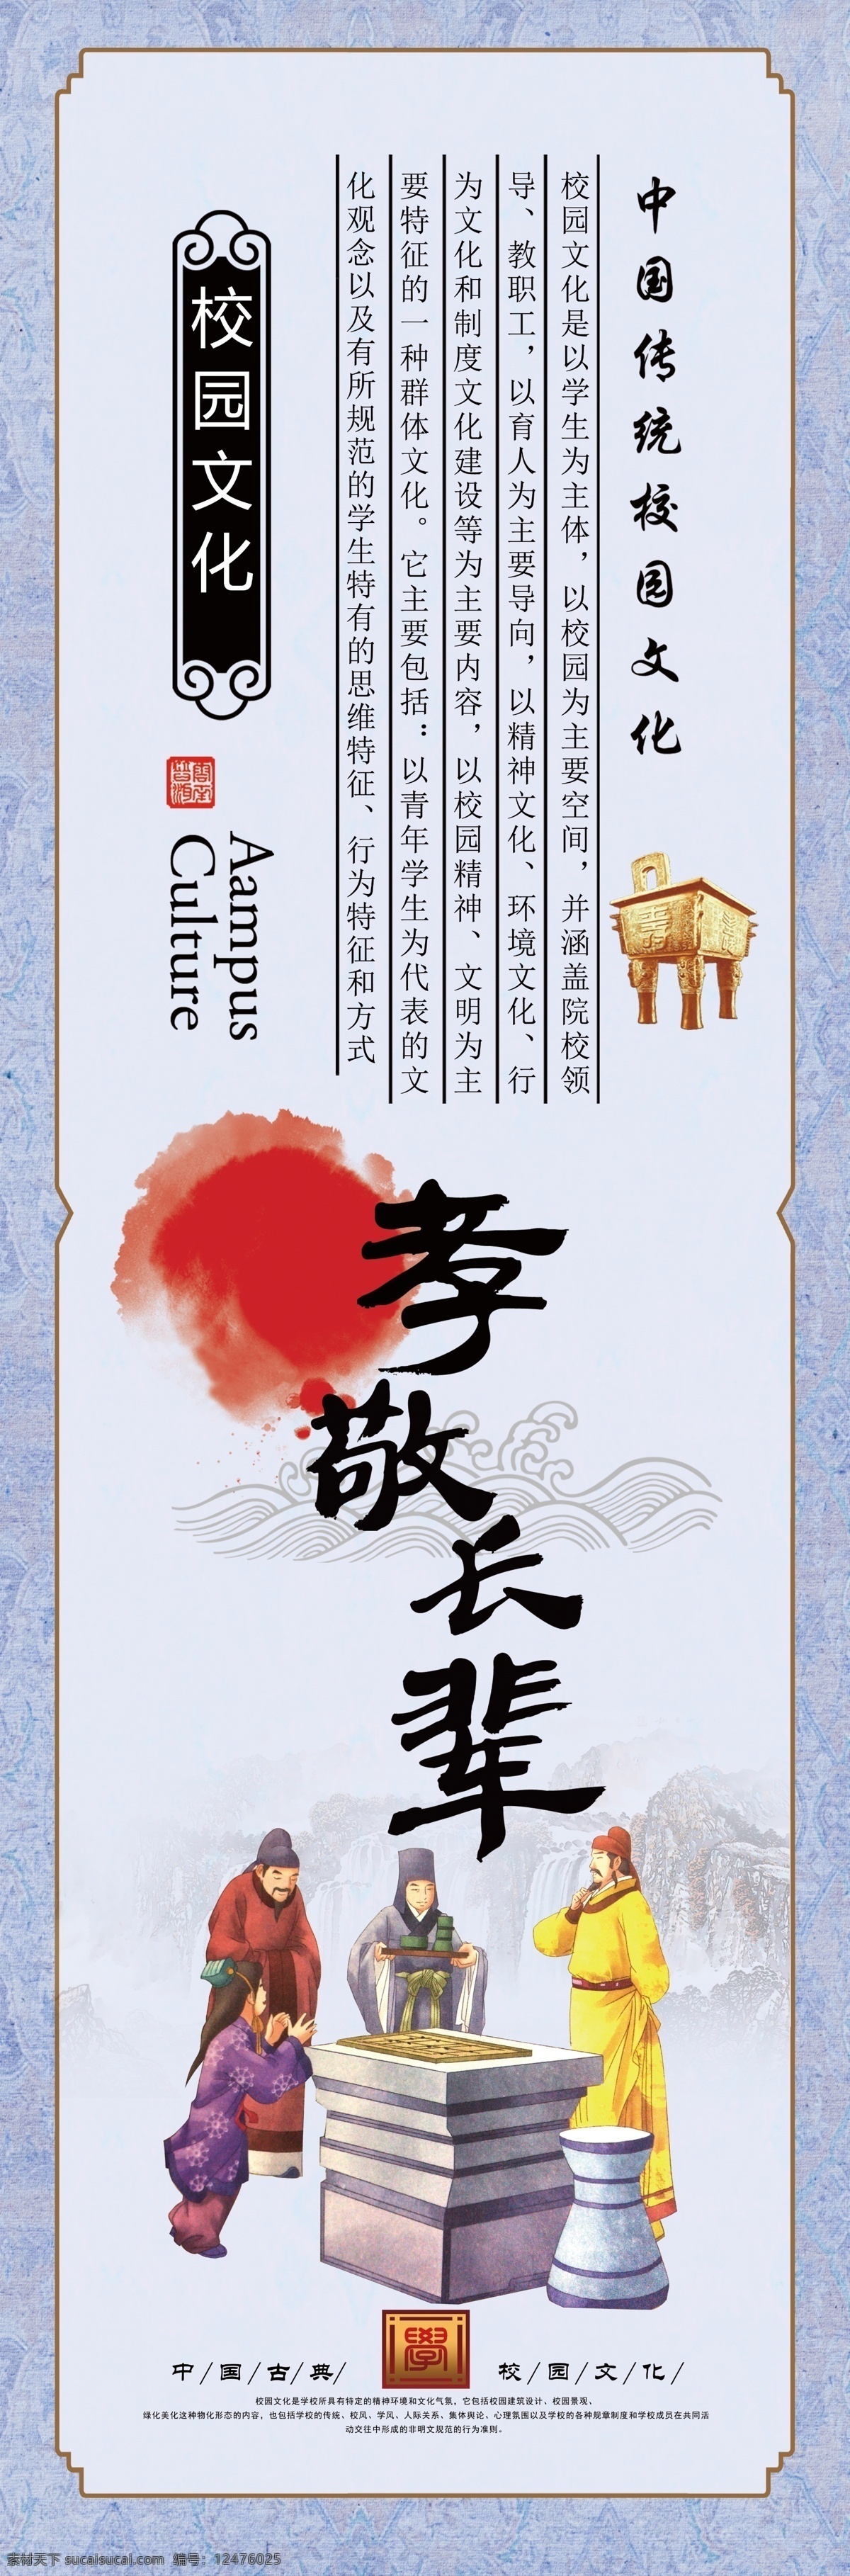 中国风 古典 边框 孝敬长辈 传统文化 展板模板